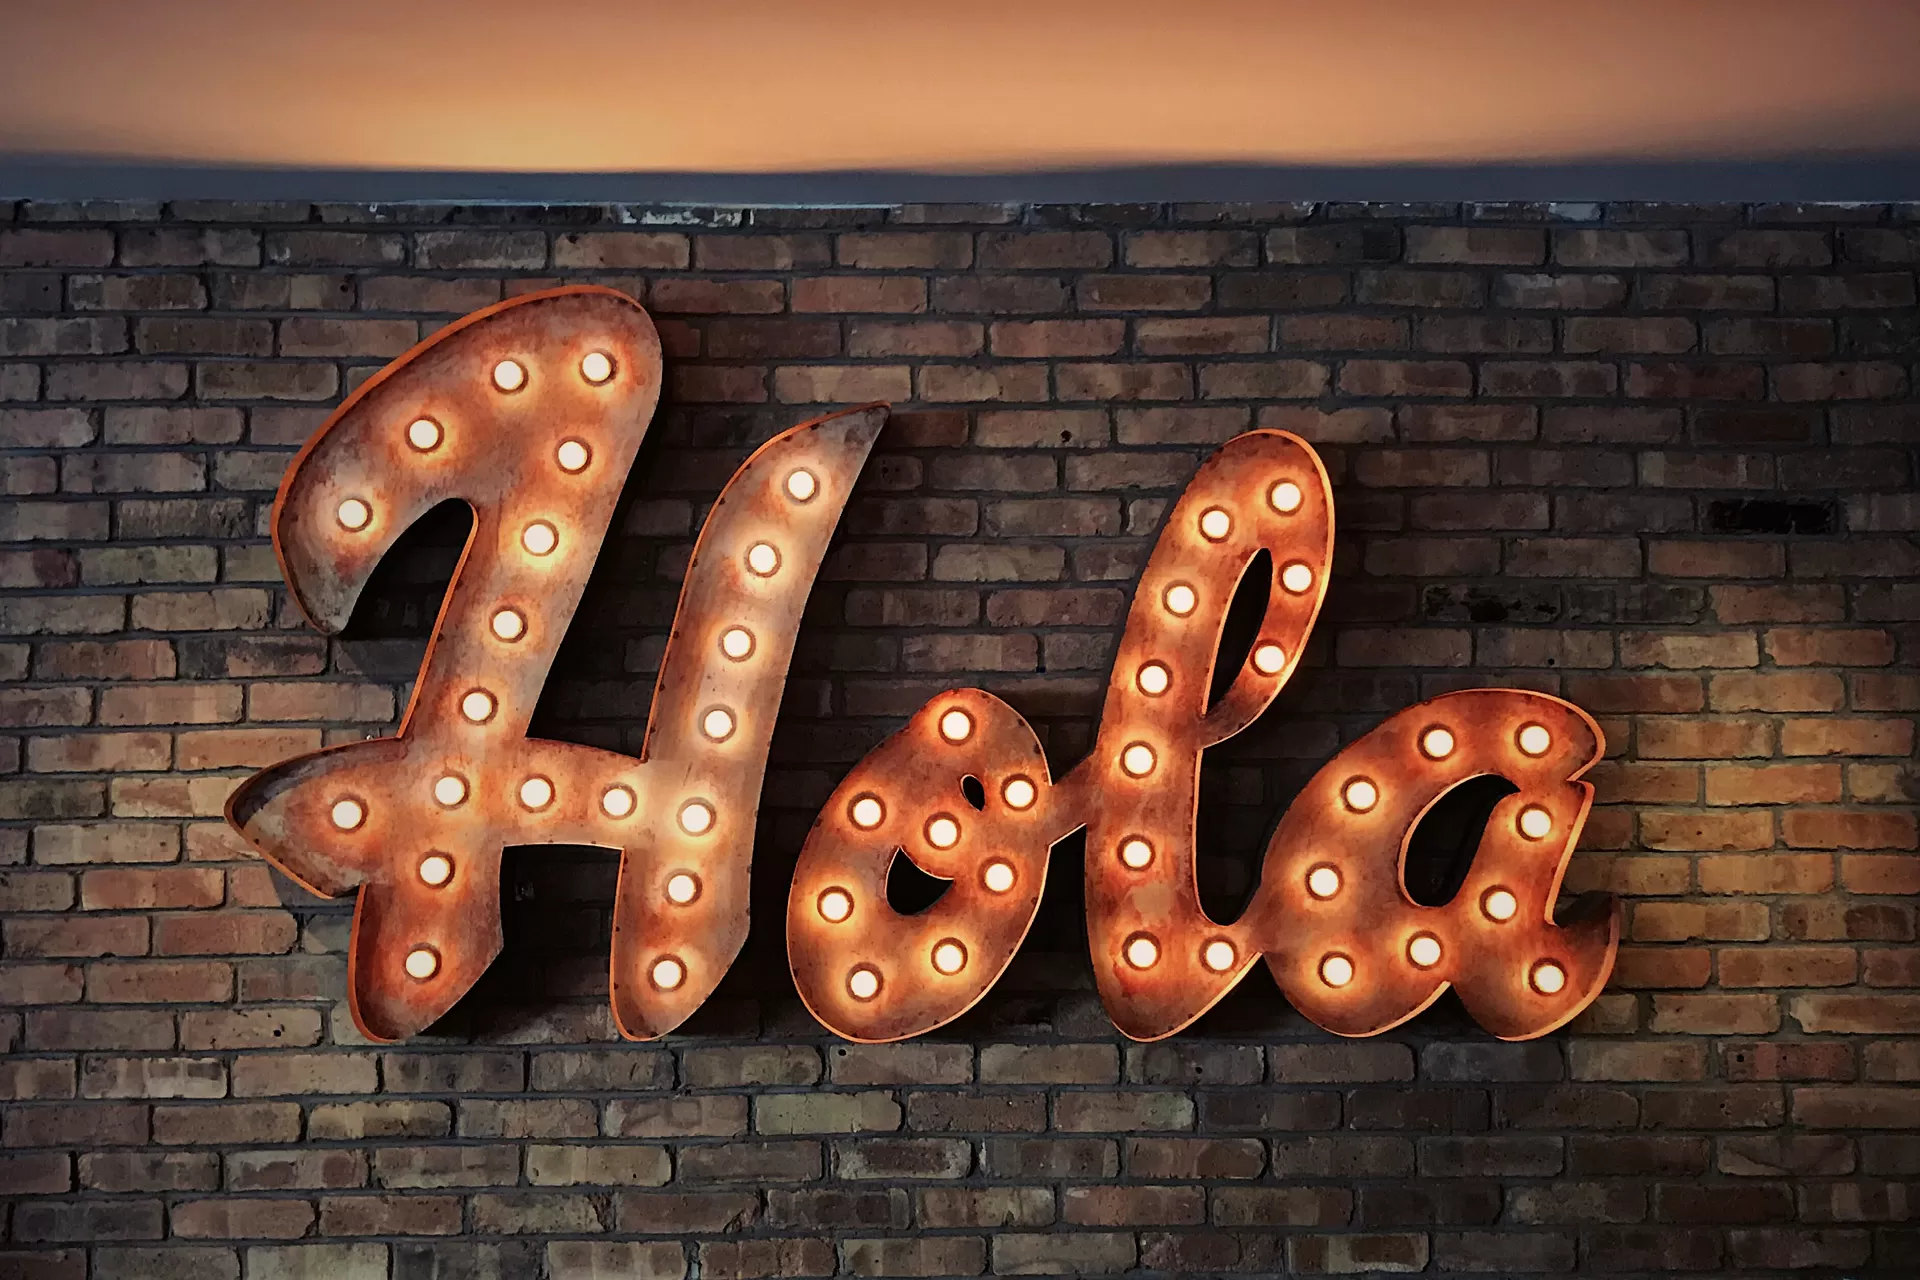 Das spanische Wort «Hola» hängt in grossen Leuchtbuchstaben an einer Backsteinmauer.